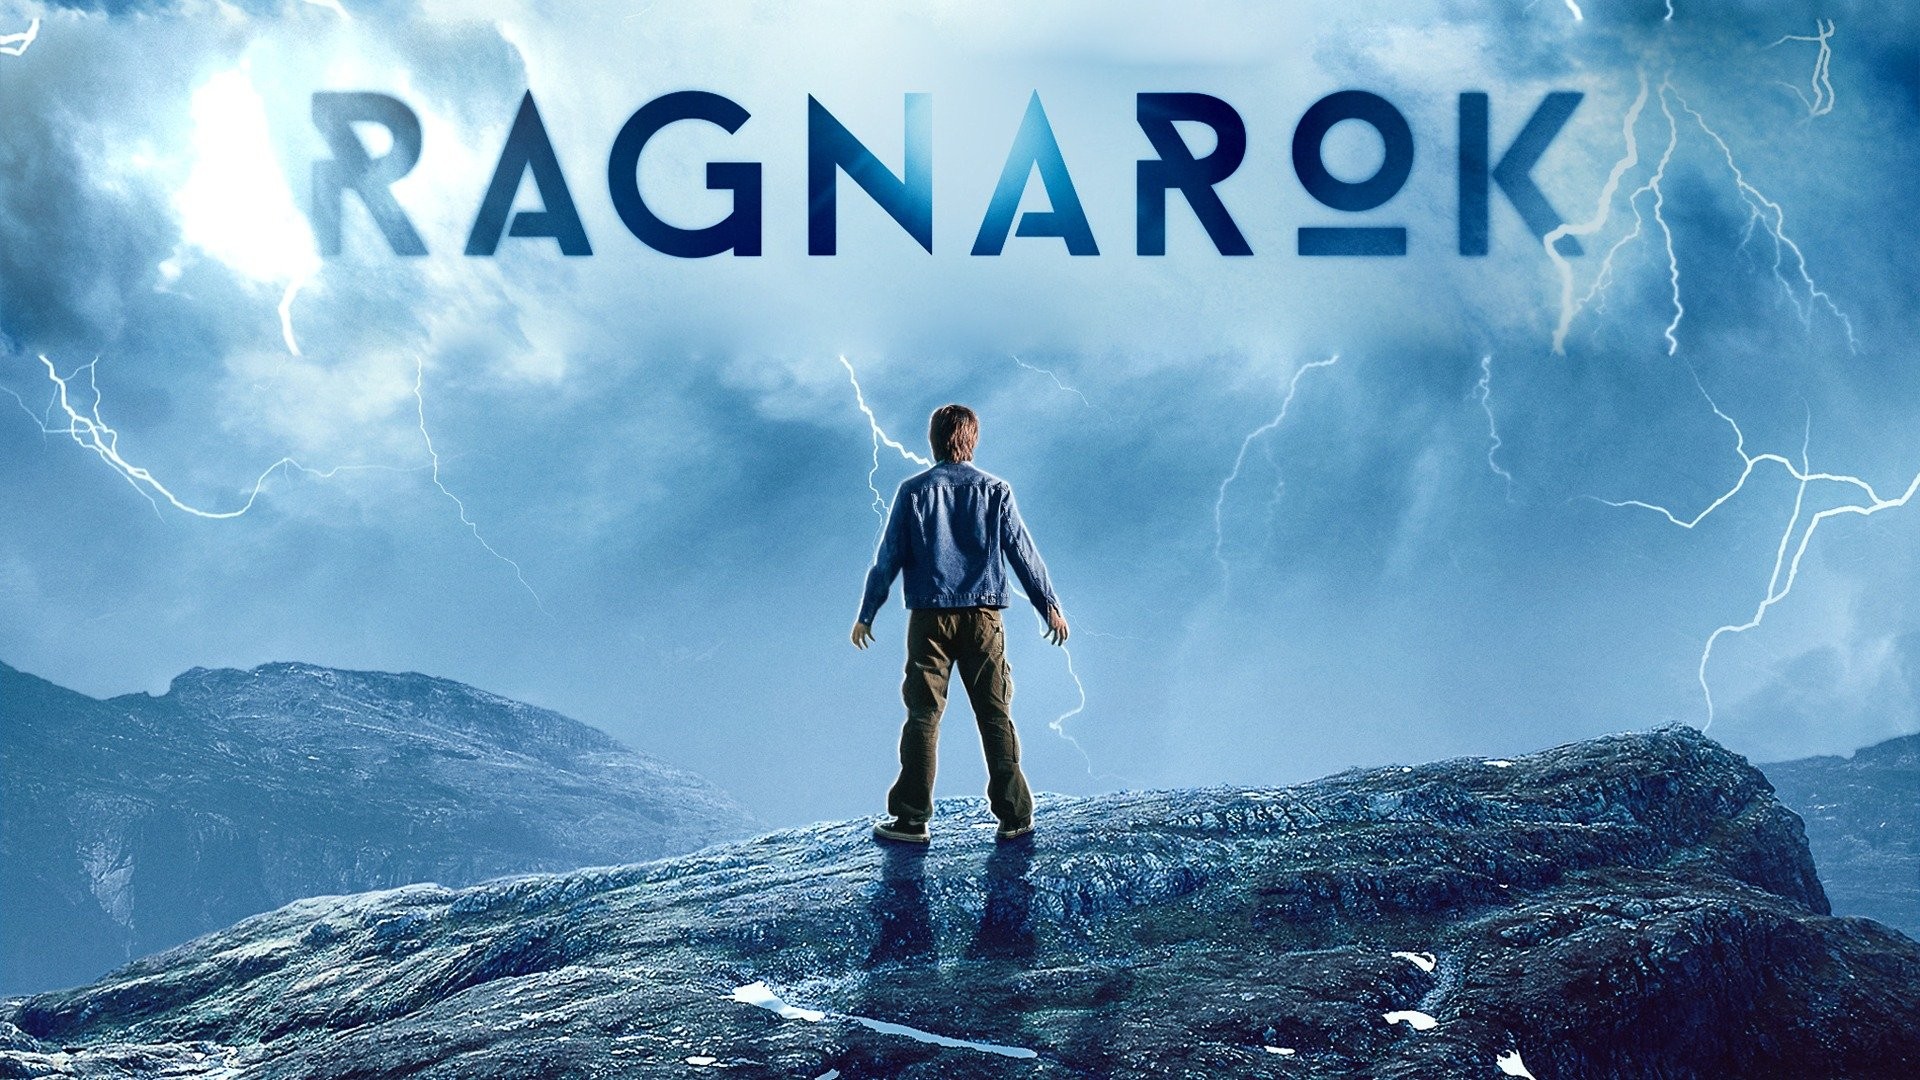 Ragnarok (série de televisão) – Wikipédia, a enciclopédia livre